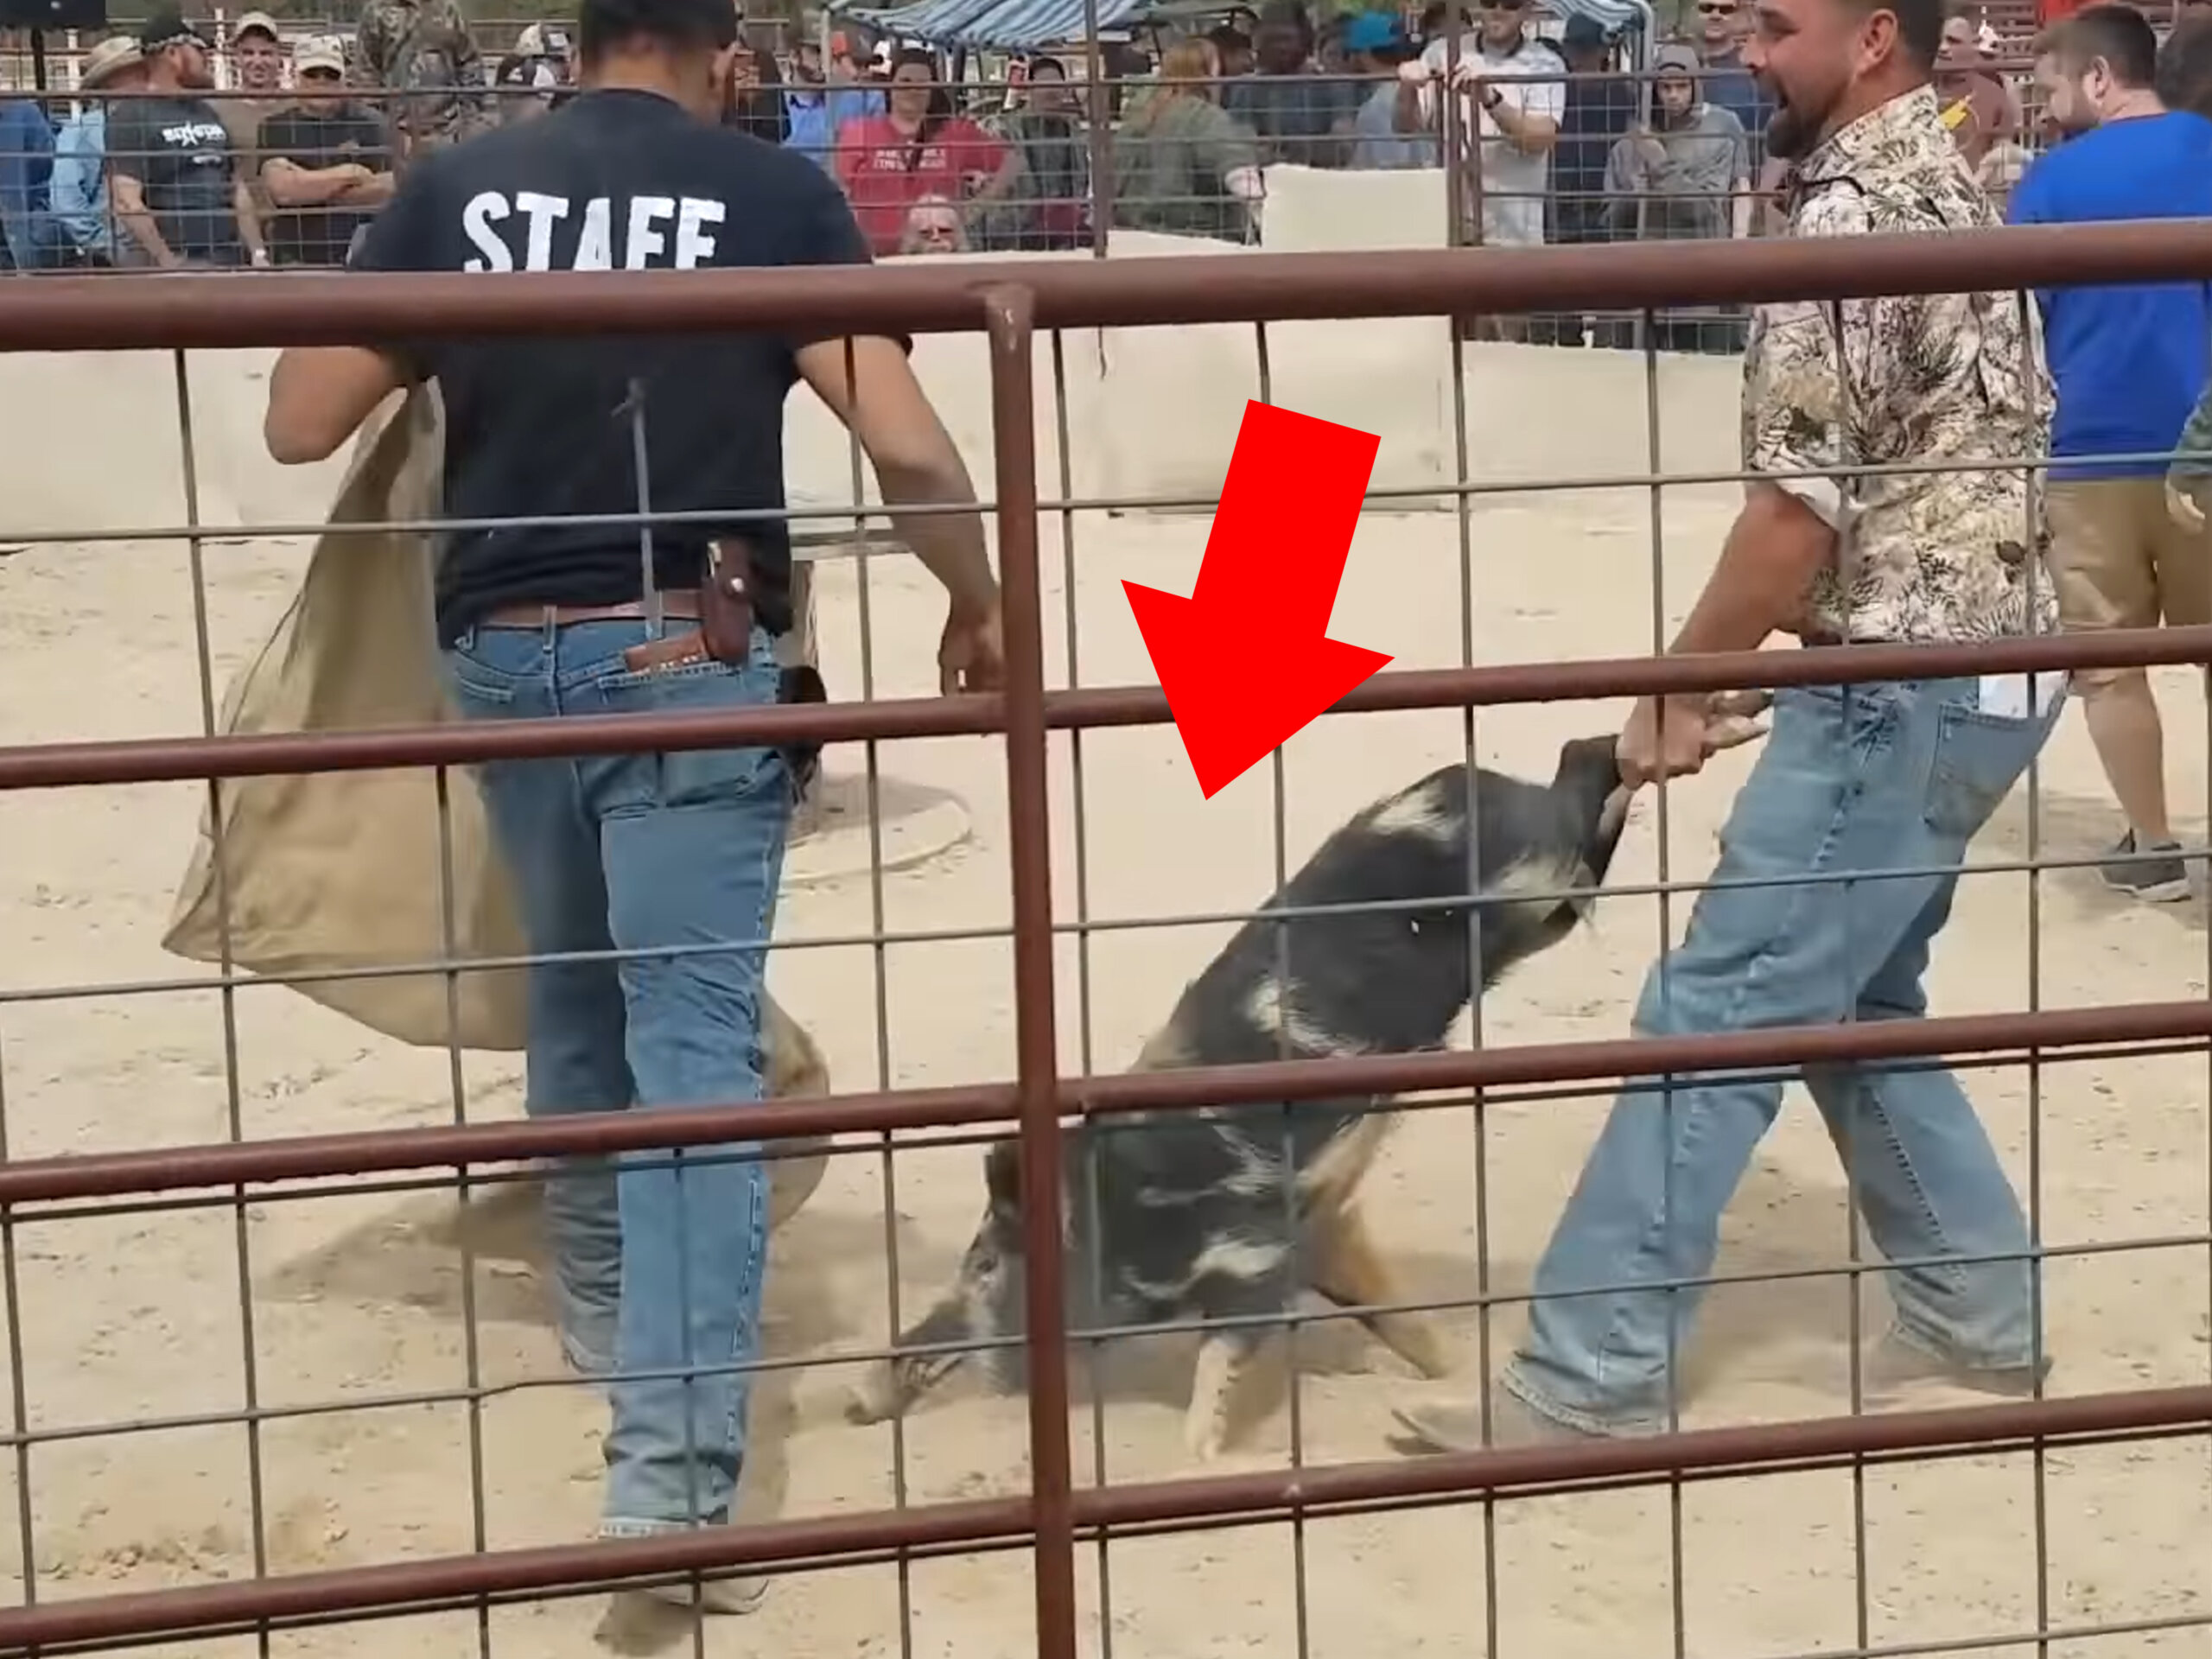 VIDEO: Wildschweine gejagt, misshandelt und in Sack gesteckt